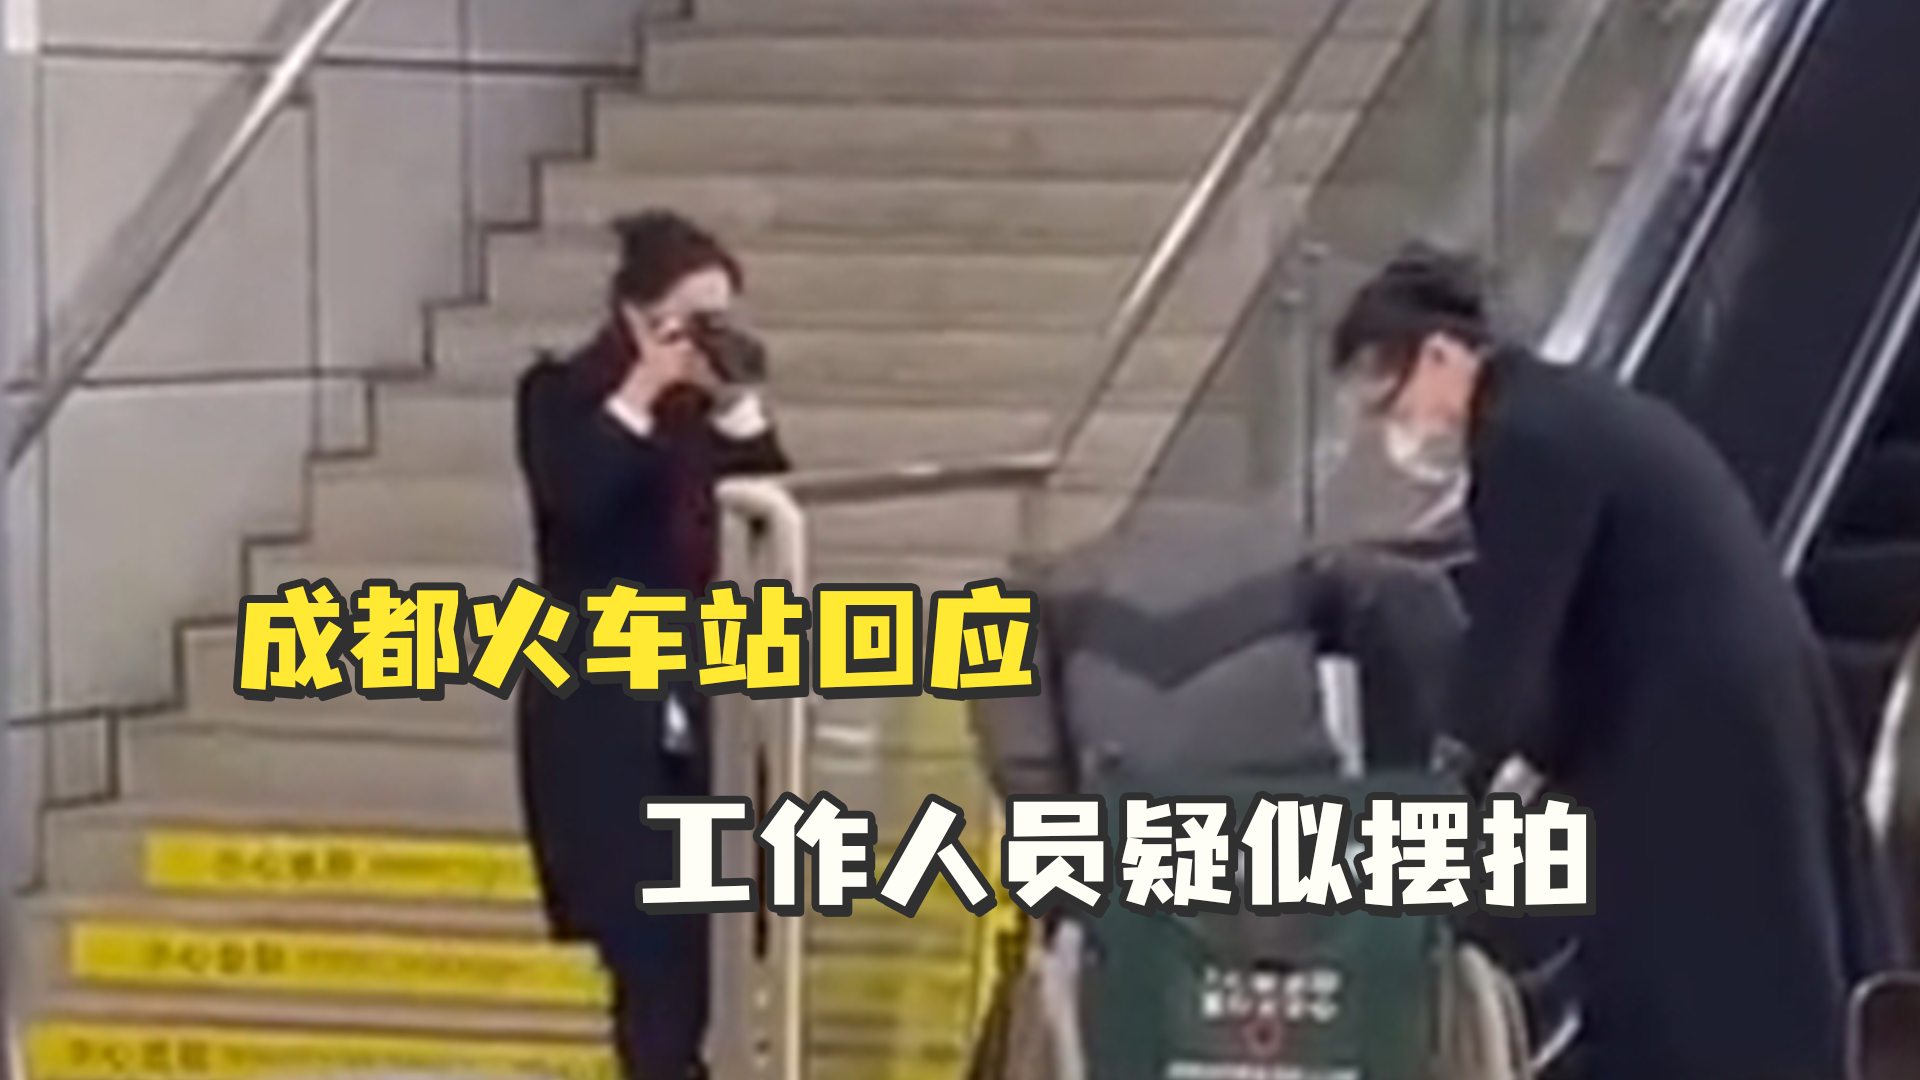 成都火车站回应工作人员疑似摆拍：系拍摄内部培训教材